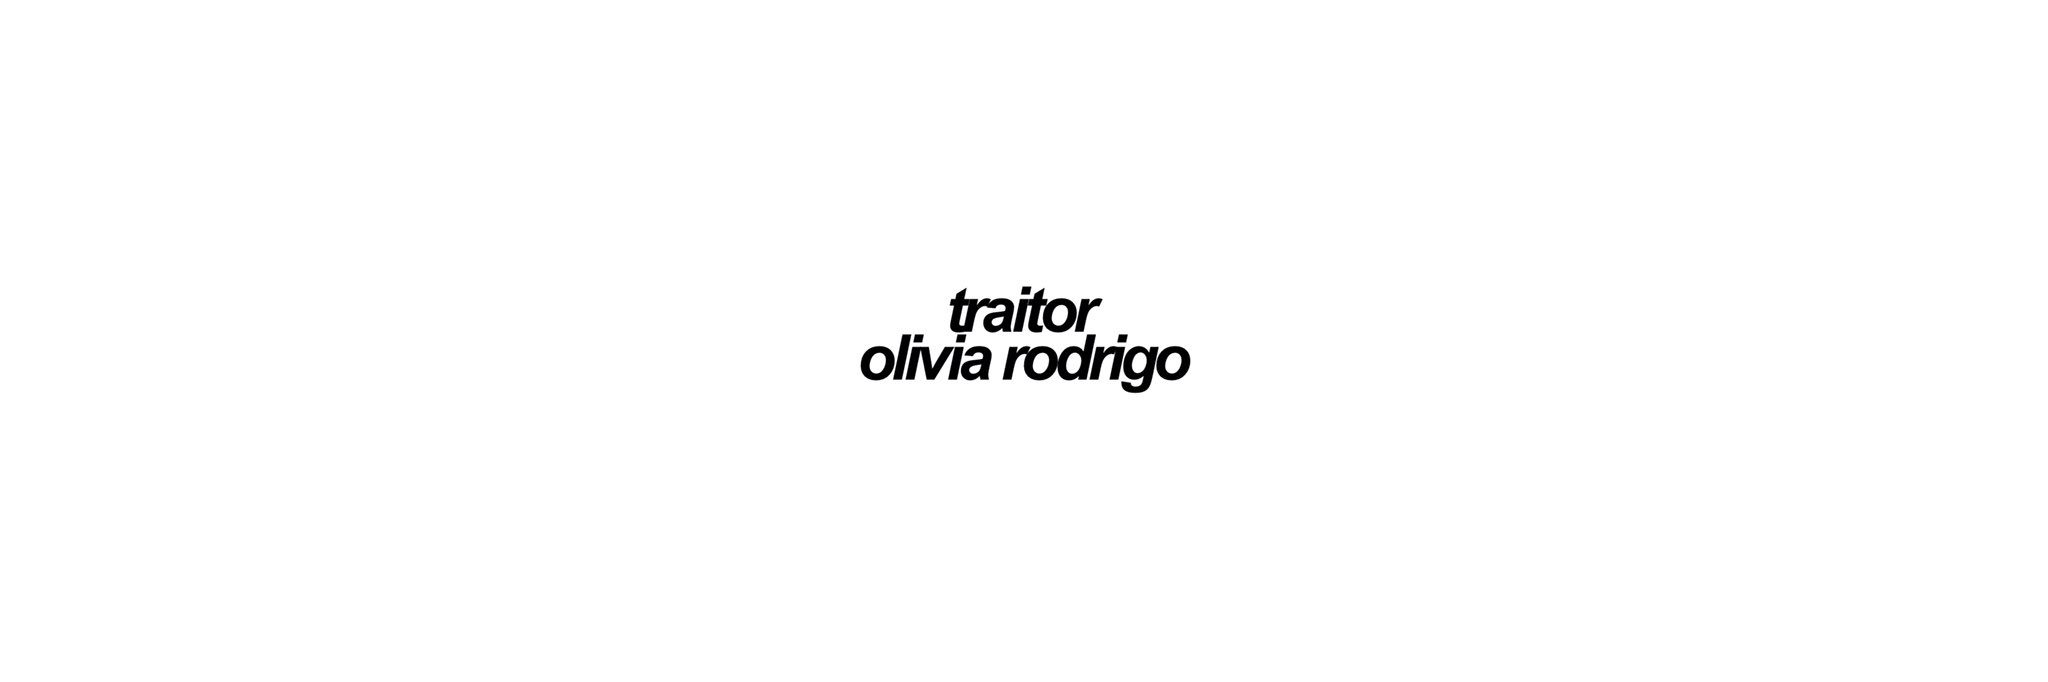 Olivia Rodrigo Brasil  Fã-site on X: Confira a tradução em português da  faixa '1 step forward, 3 steps back' do album de estreia de Olivia Rodrigo,  SOUR. #SOURoutnow  / X